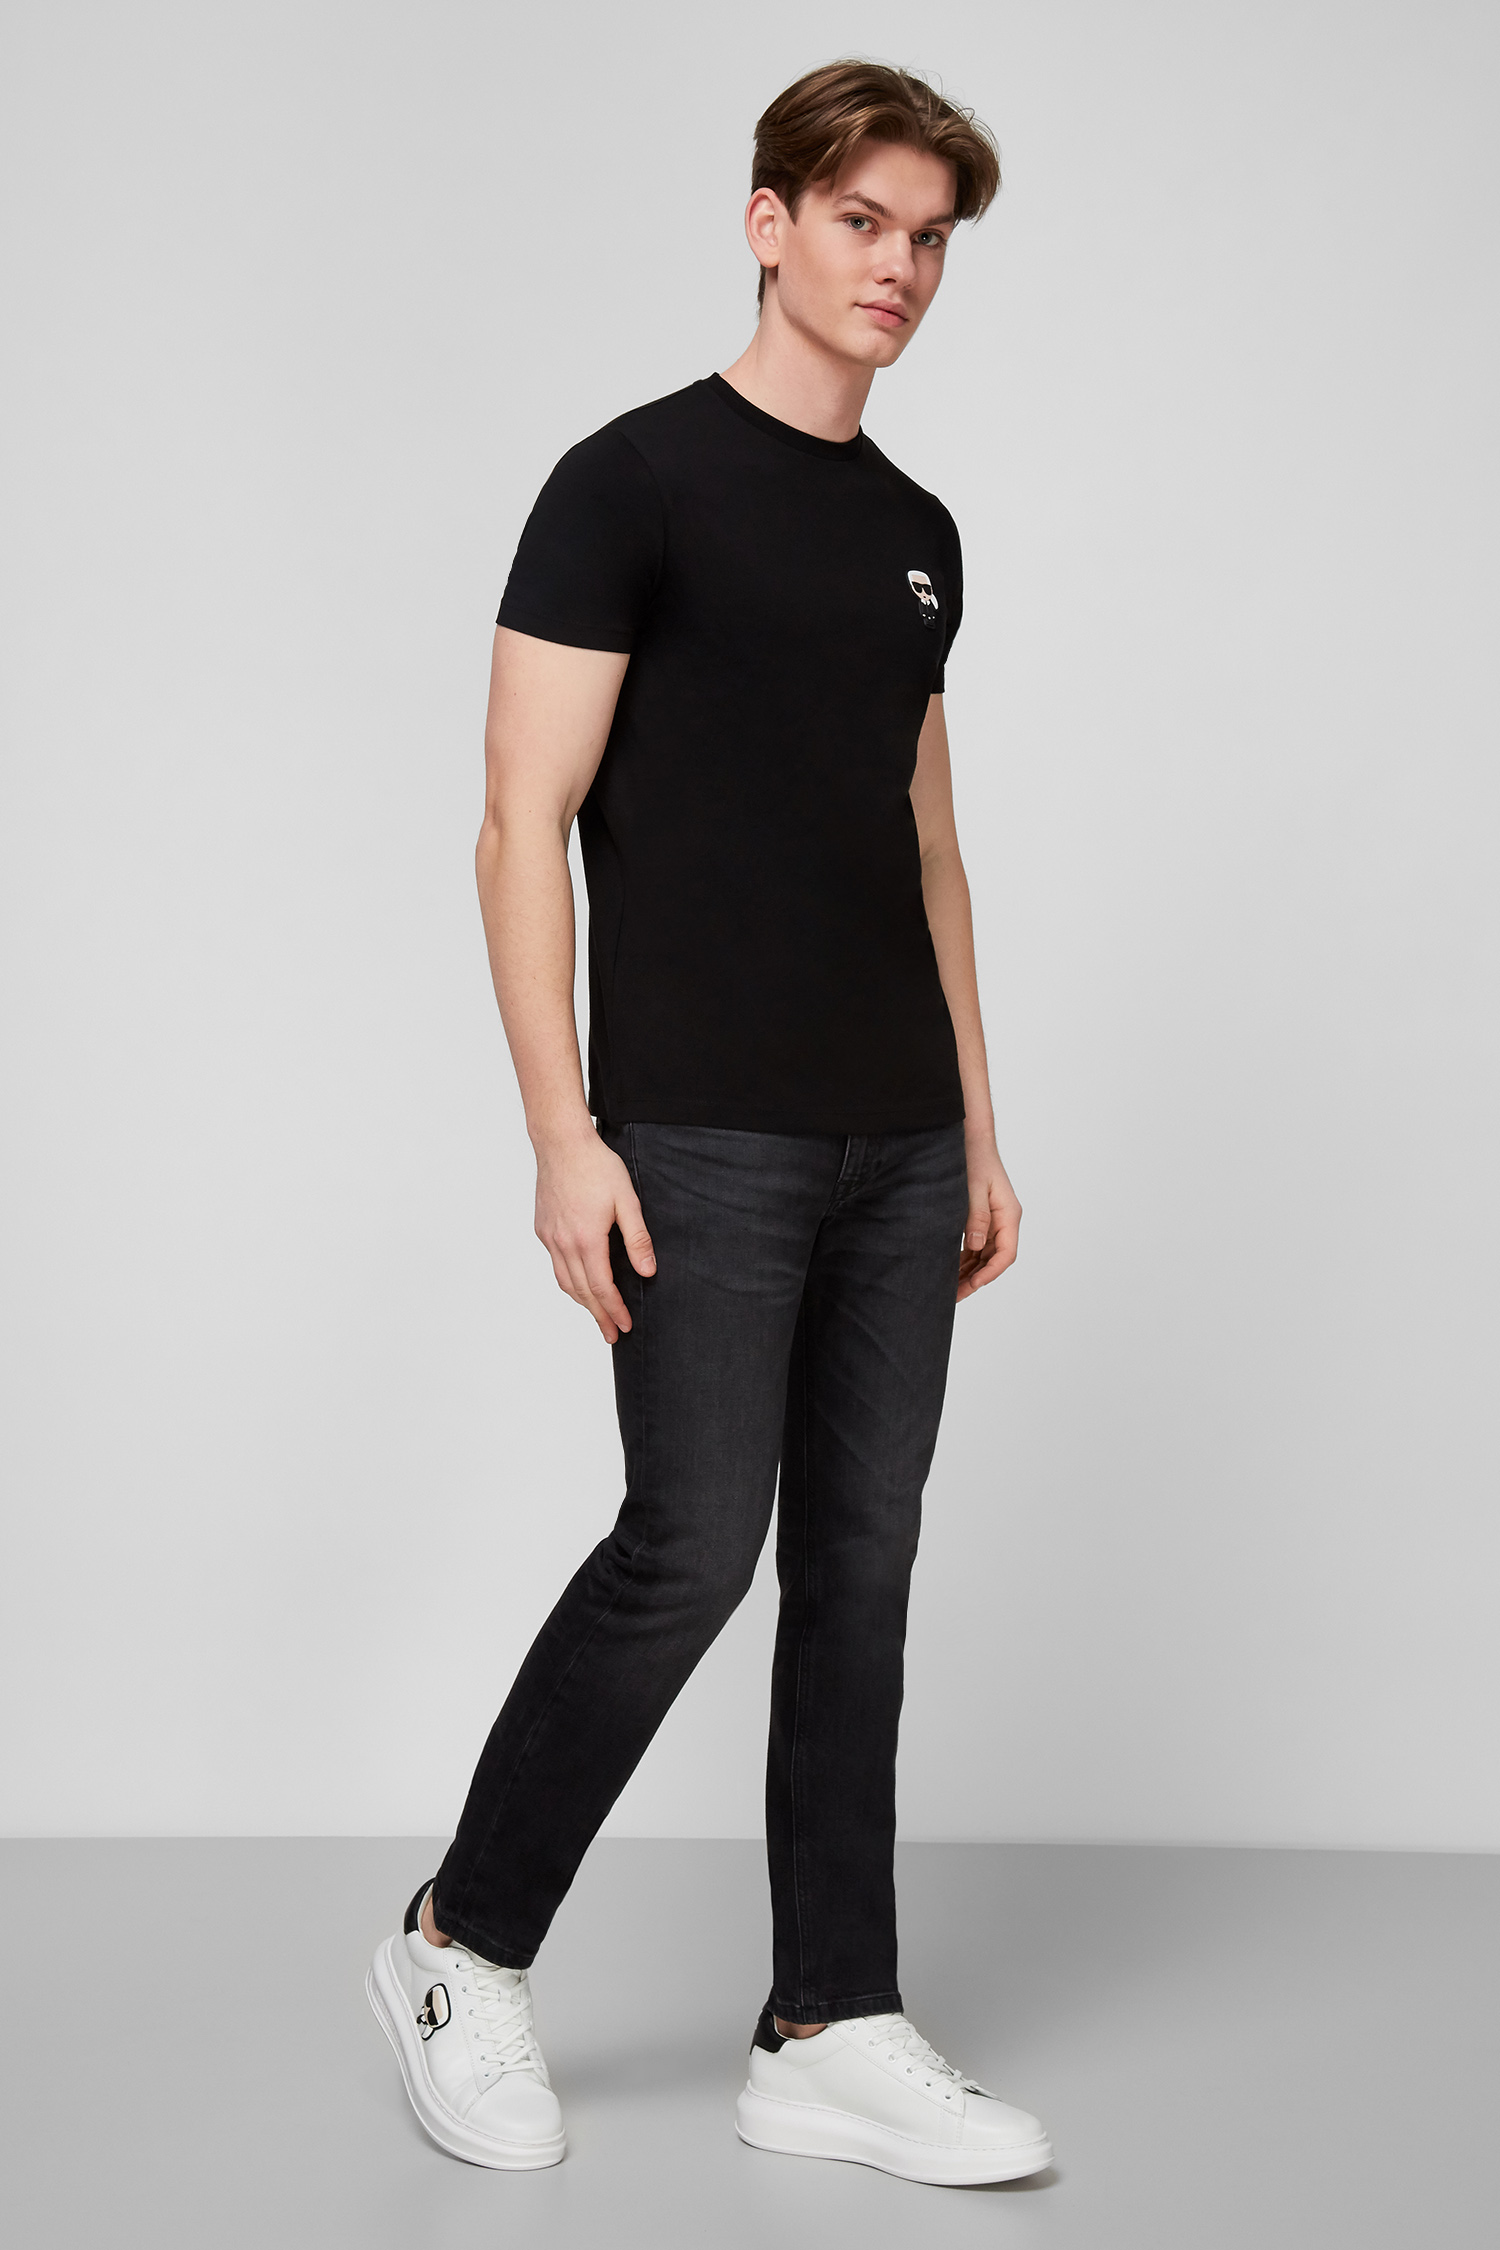 Чорна футболка для хлопців Karl Lagerfeld 511221.755025;990